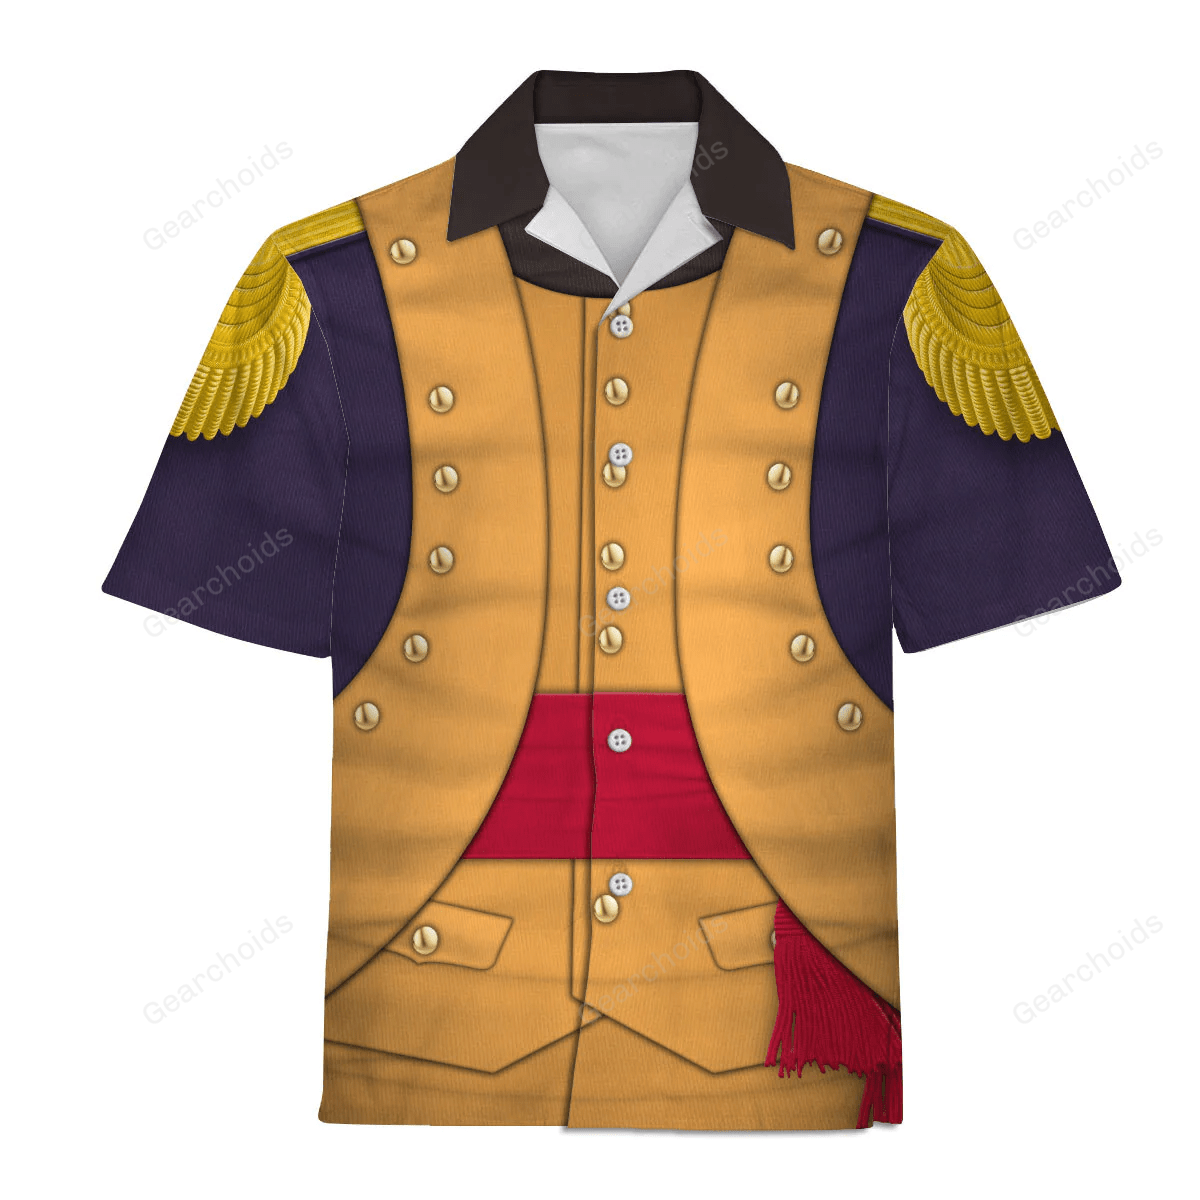 George Washington Uniform Hawaiian Shirt